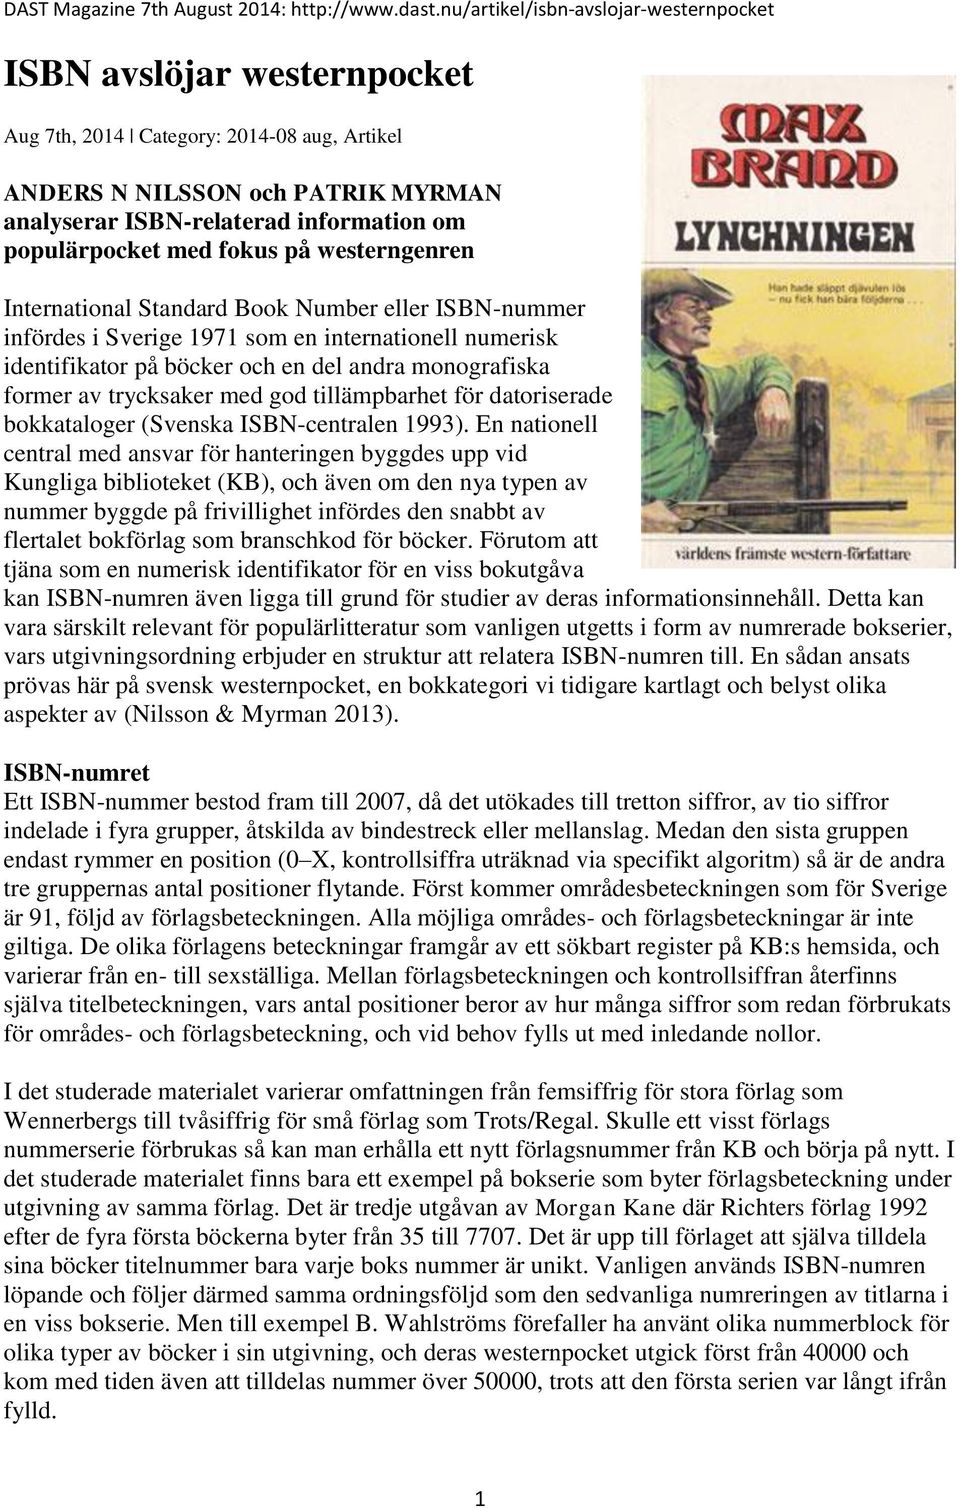 populärpocket med fokus på westerngenren International Standard Book Number eller ISBN-nummer infördes i Sverige 1971 som en internationell numerisk identifikator på böcker och en del andra